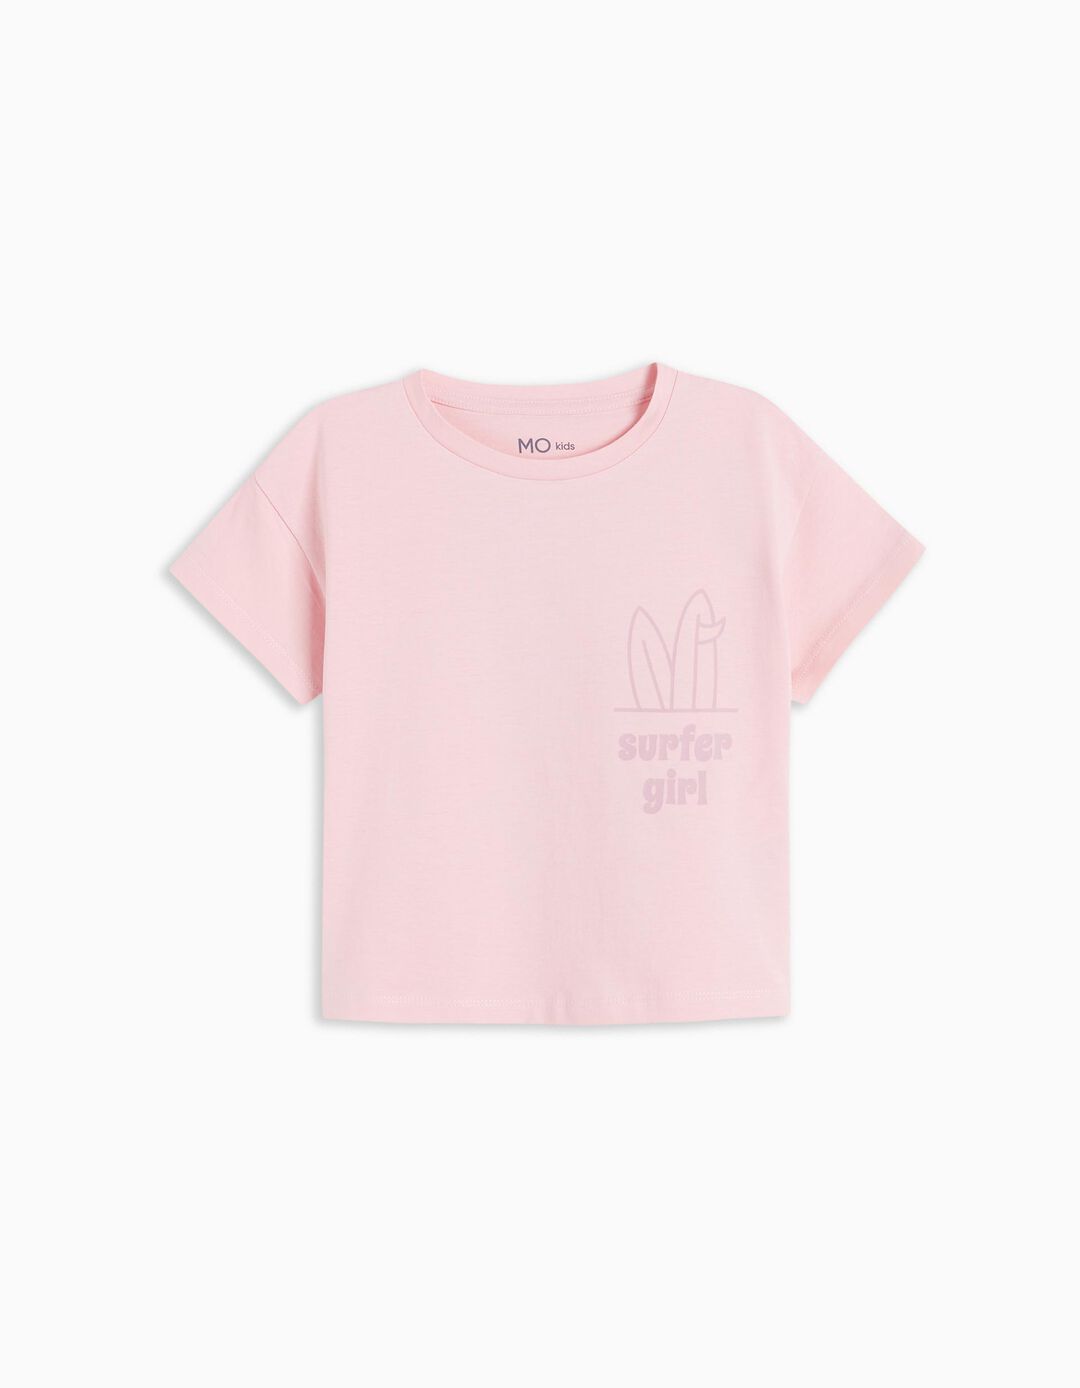 T-shirt, Girls, Light Pink